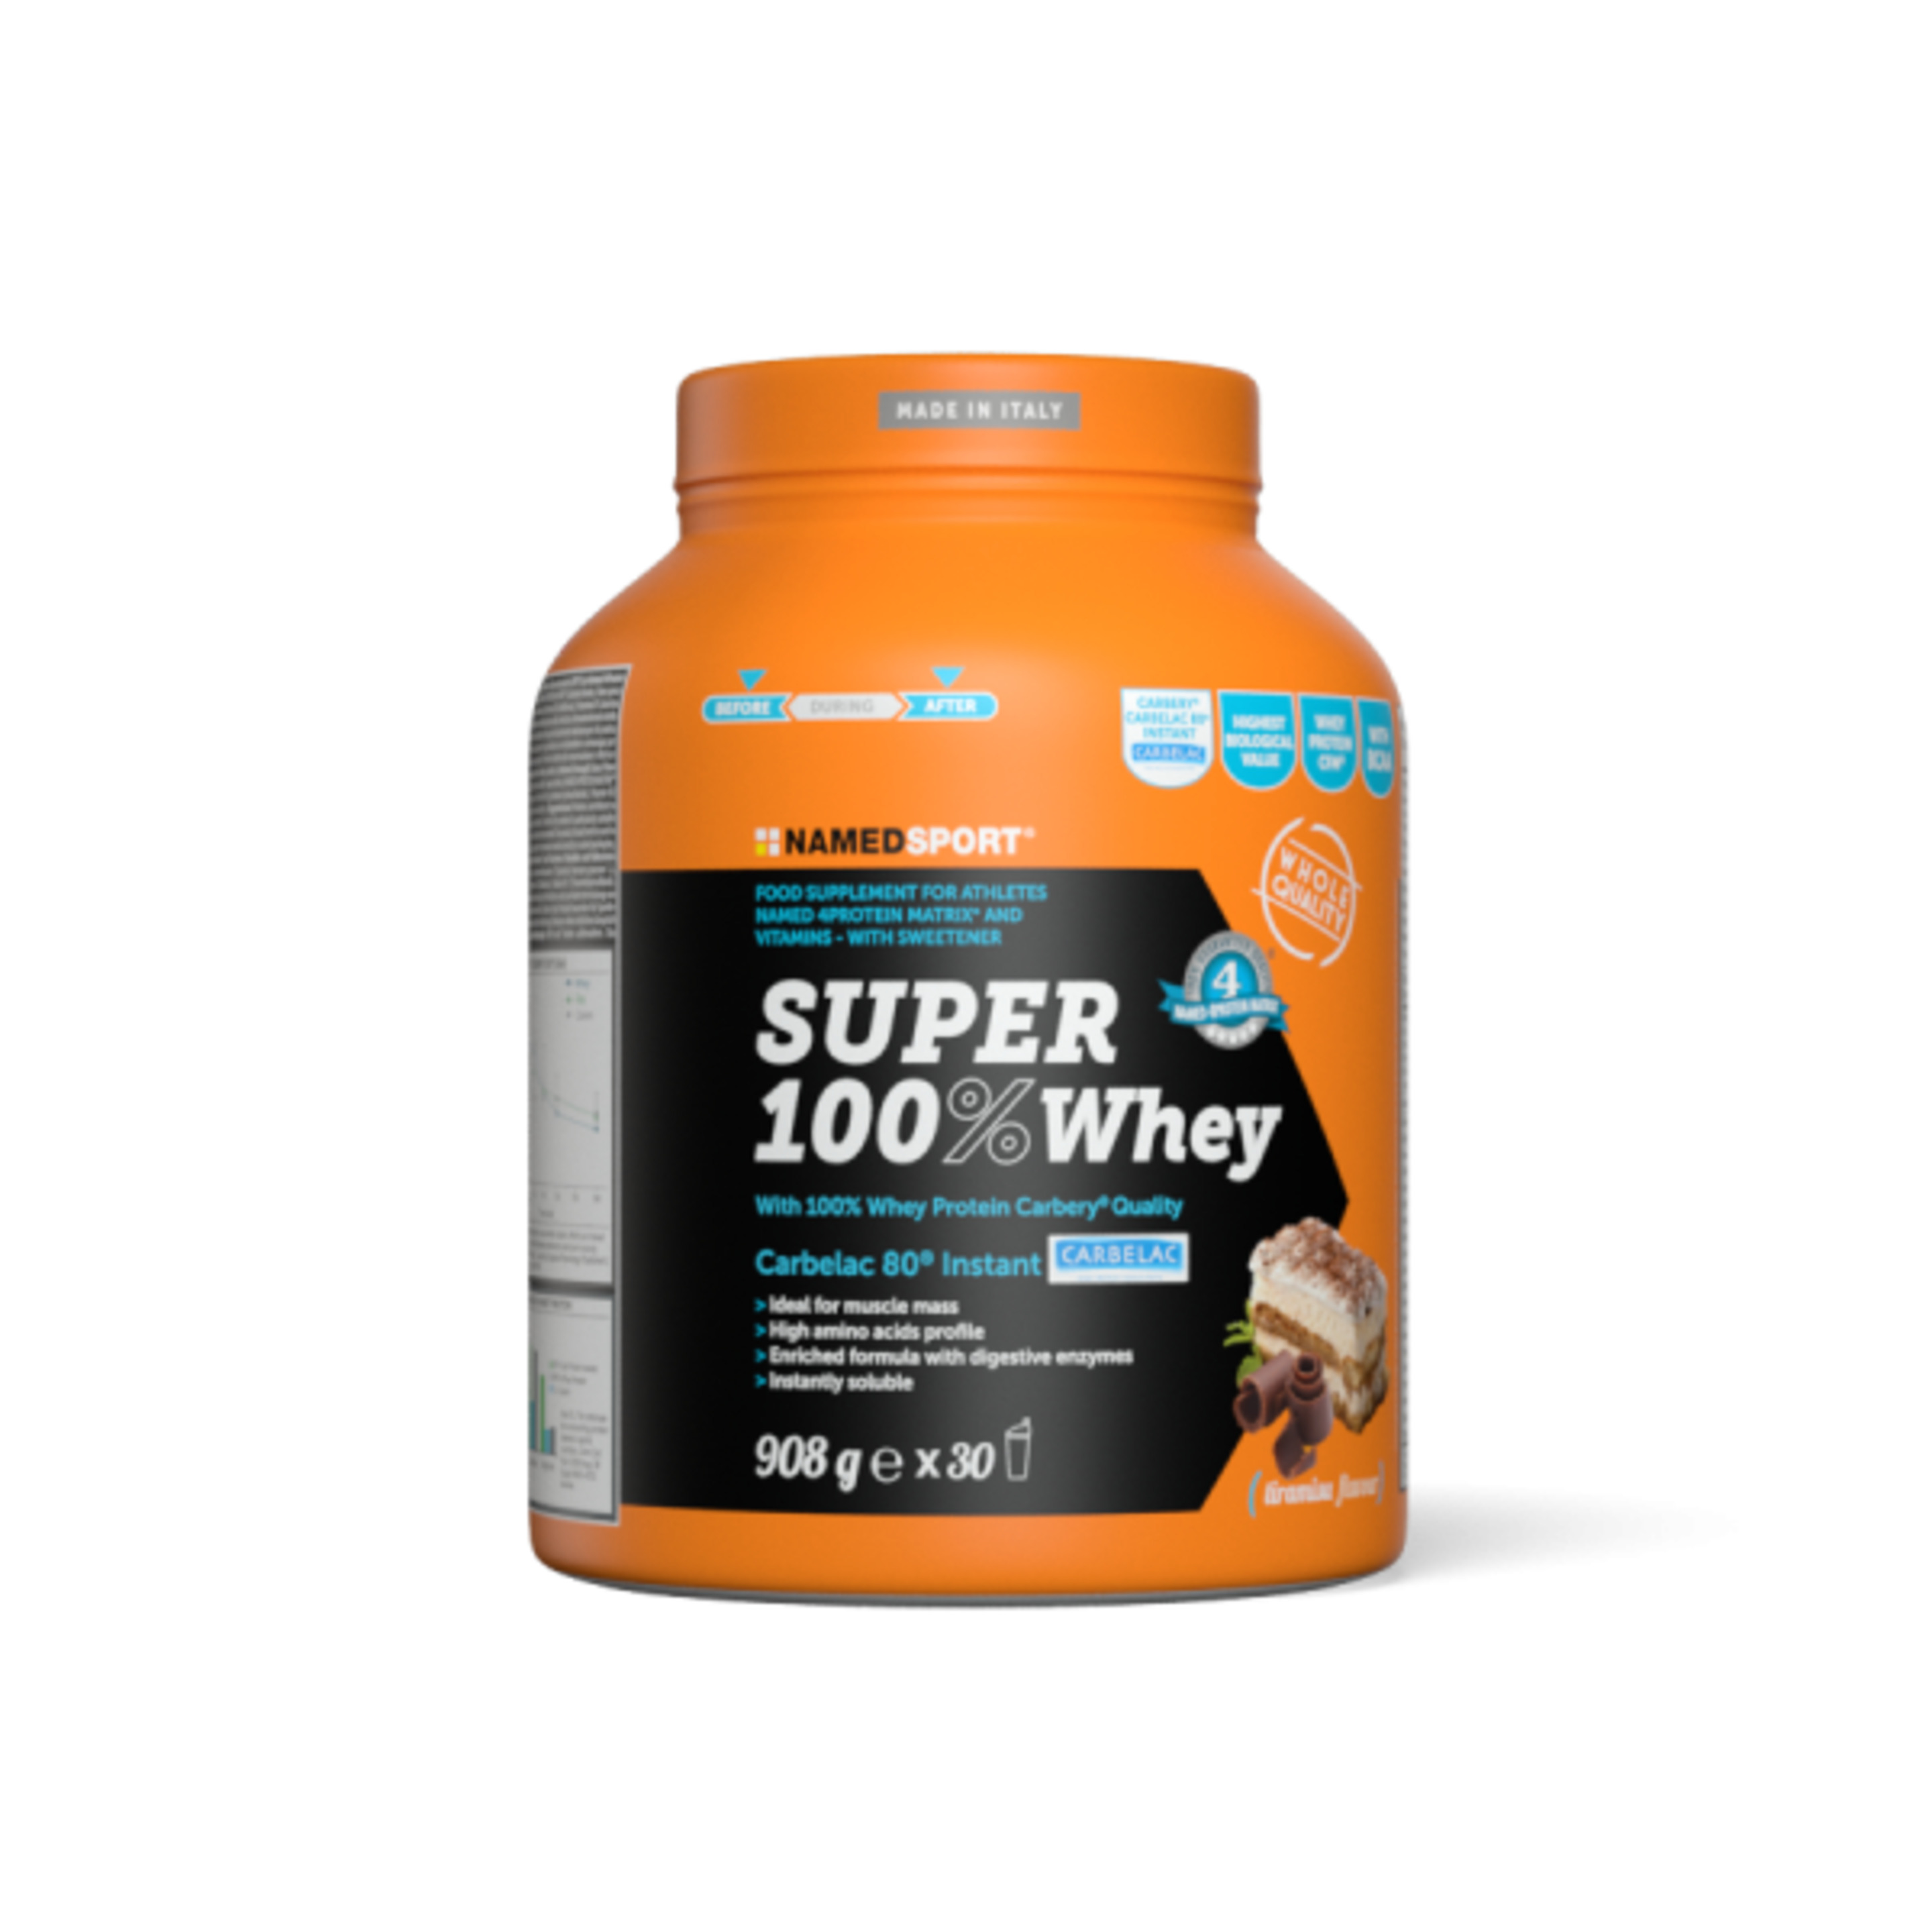 Super 100% Whey Tiramisu - 908g